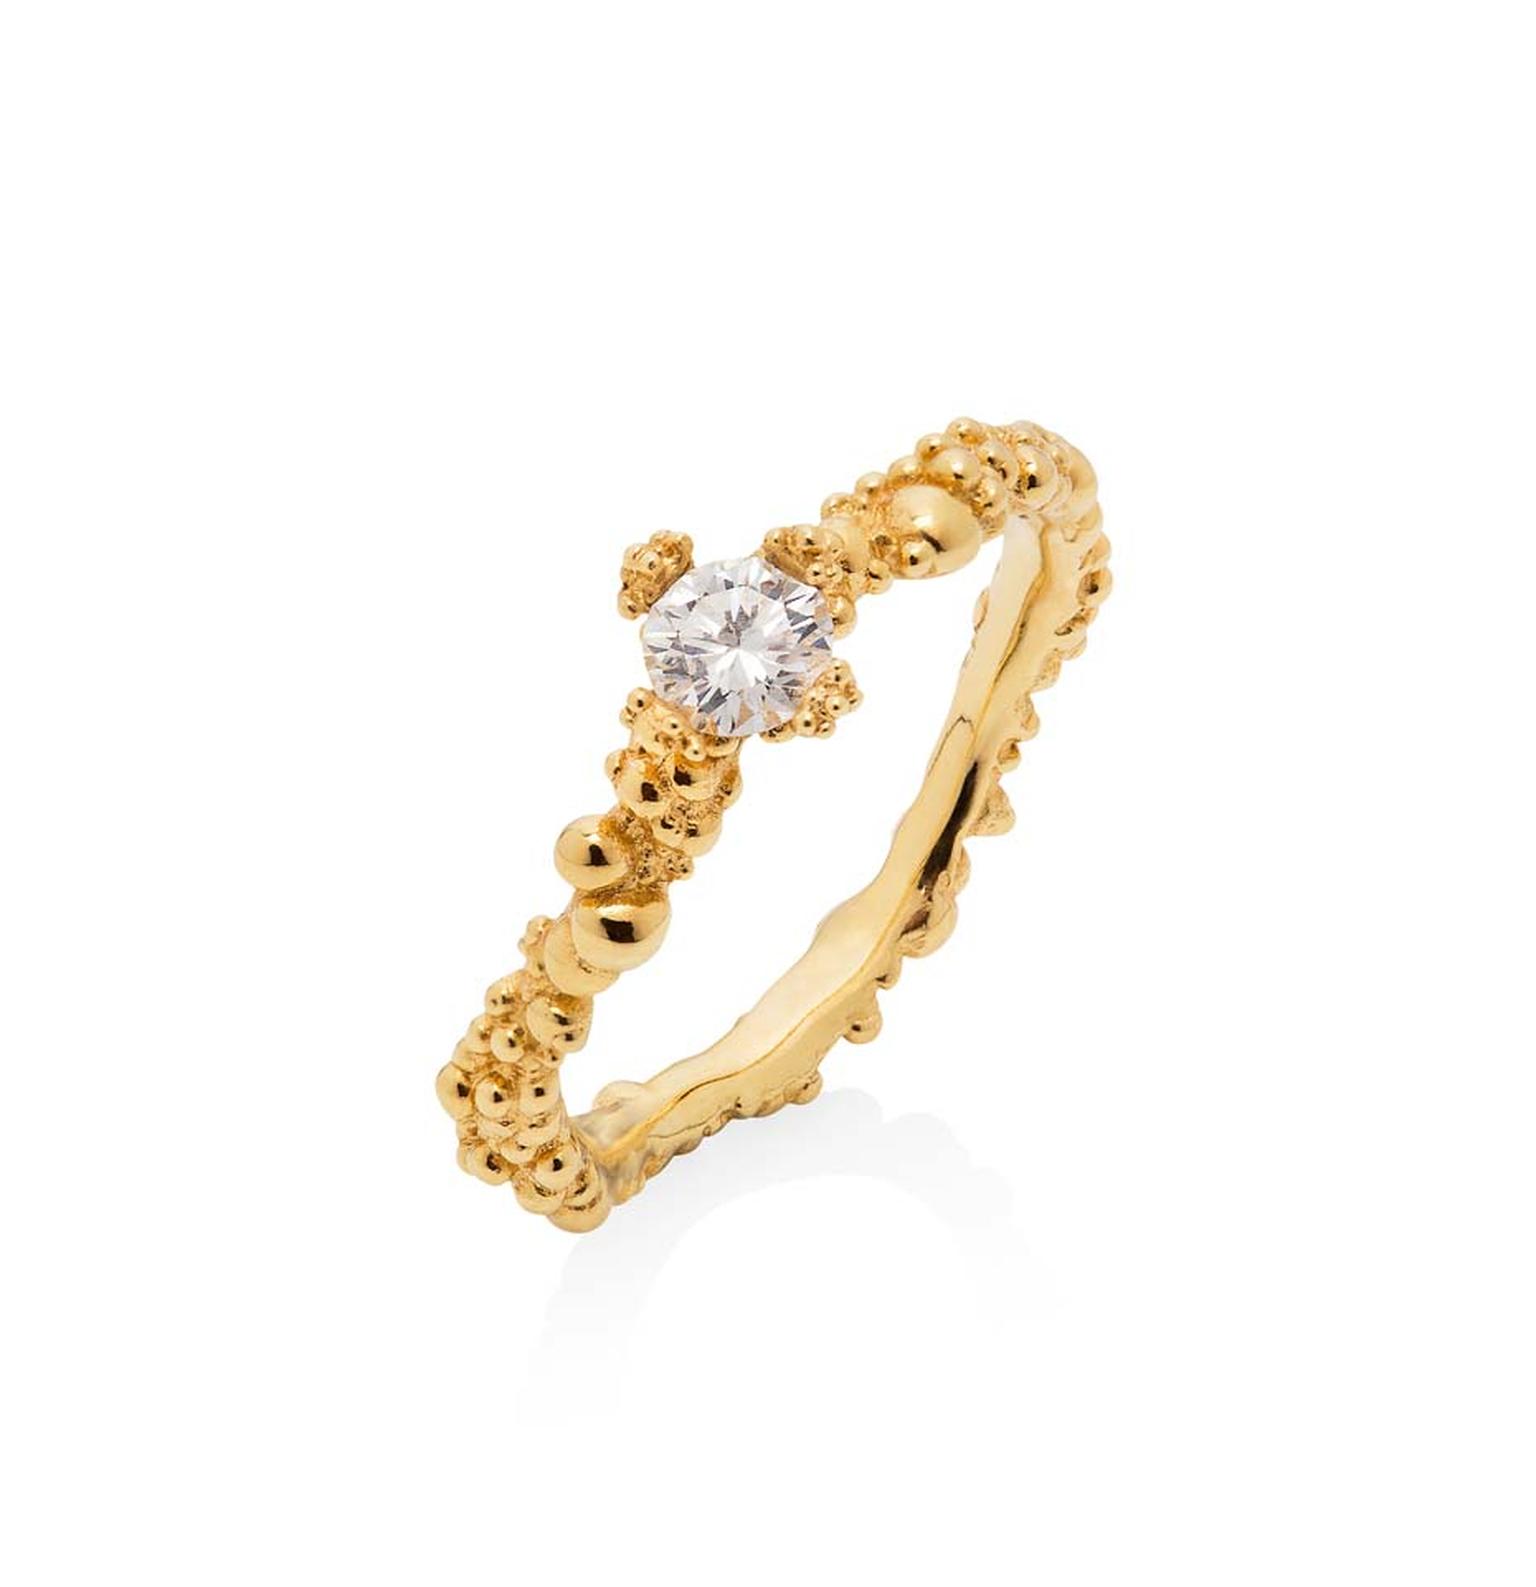 Ornella Iannuzzi Coralline Circle ring with a central brilliant-cut diamond.